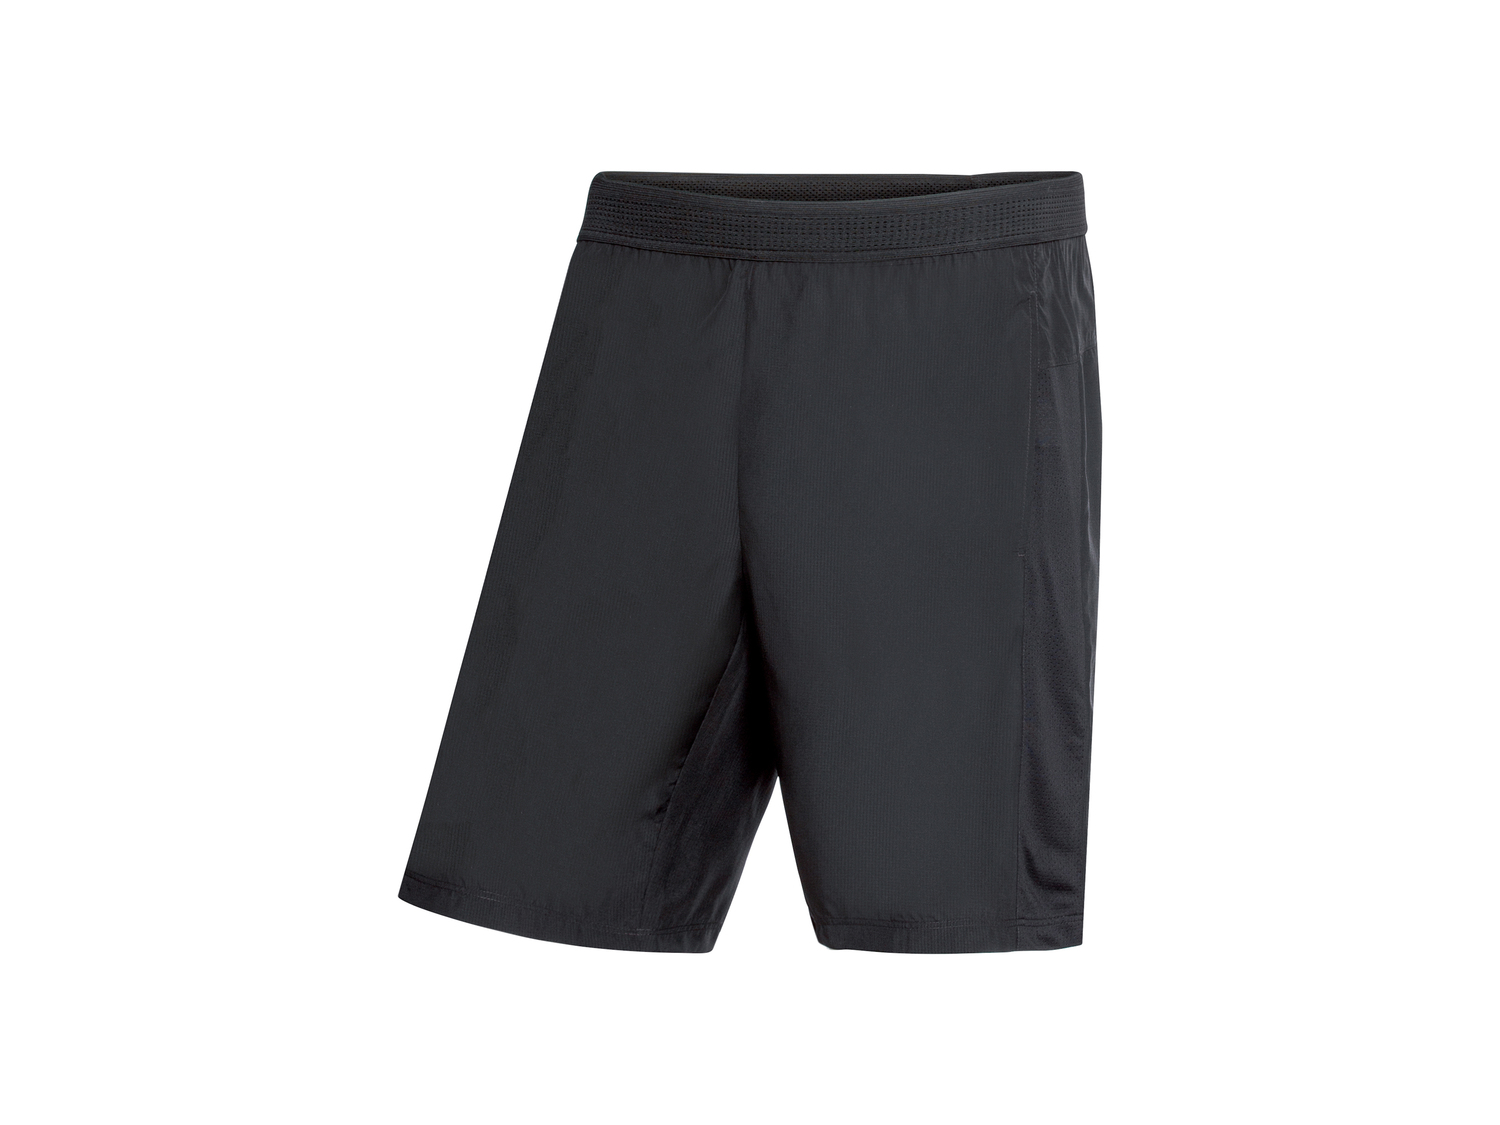 Shorts sportivi da uomo Crivit, prezzo 6.99 &#8364; 
Misure: S-XL 
- Lightweight ...